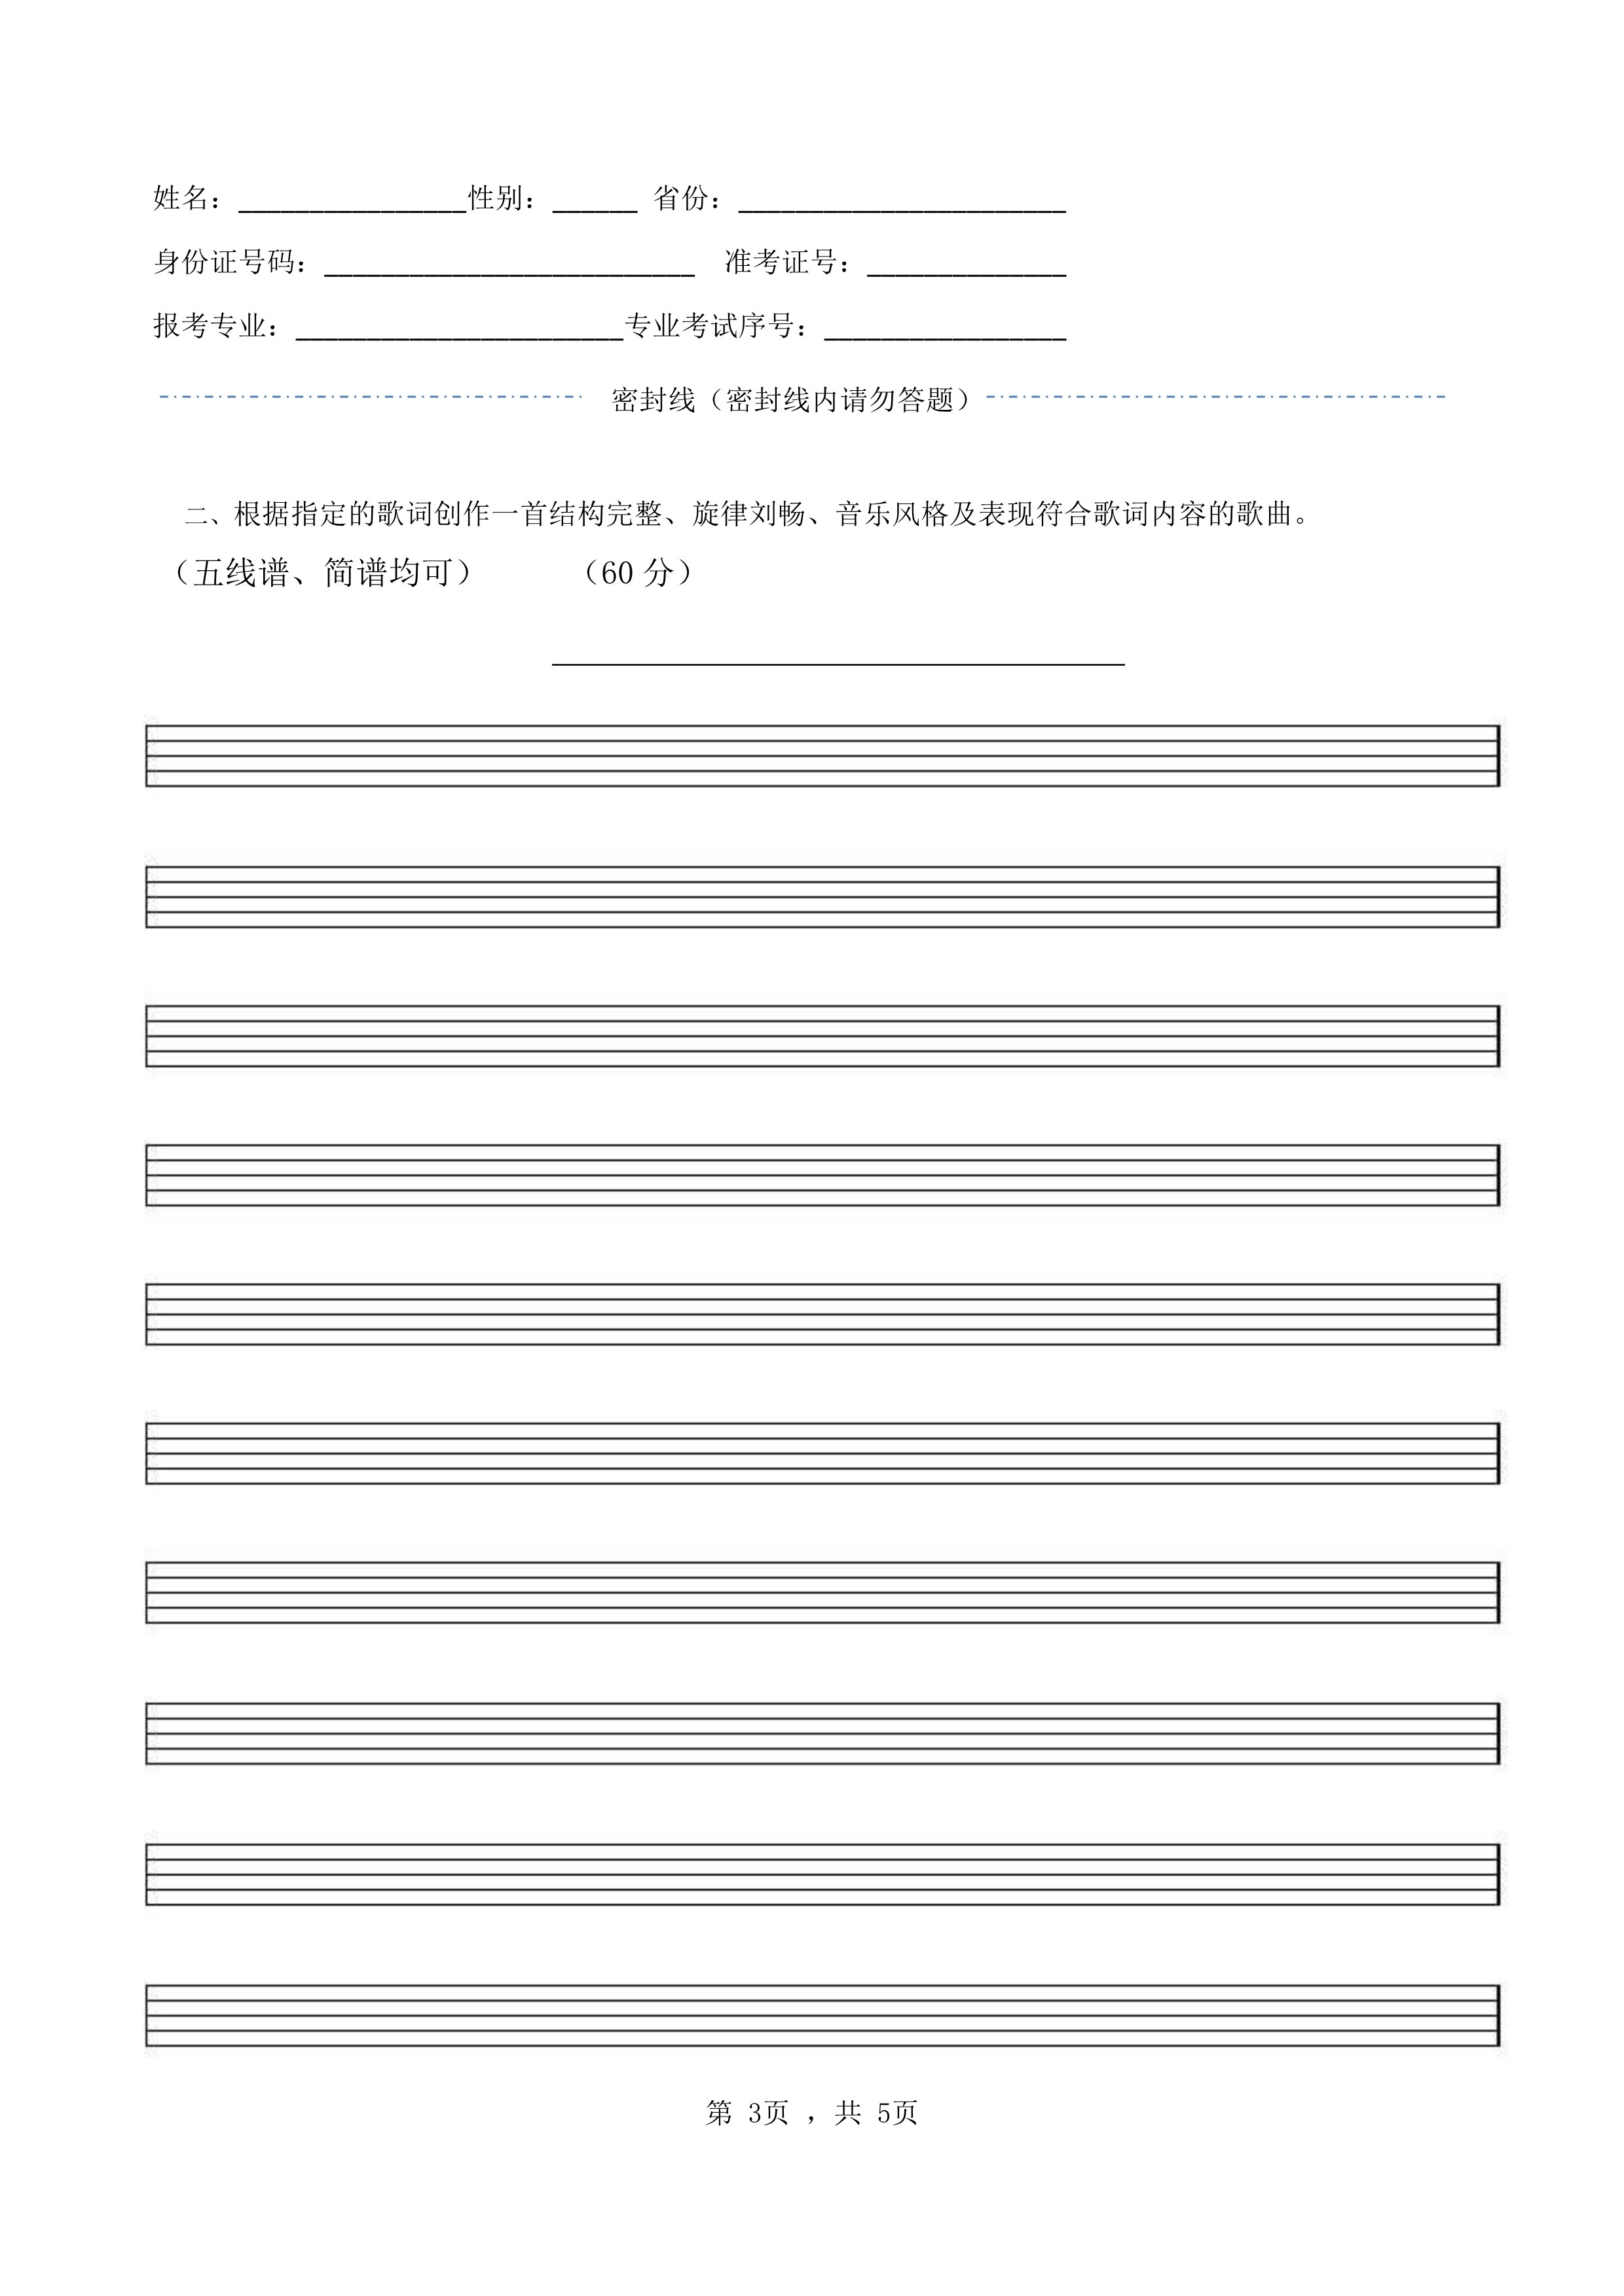 南京艺术学院2022年本科招生录音艺术专业《命题写作》科目考试答题纸及草稿纸_3.jpg